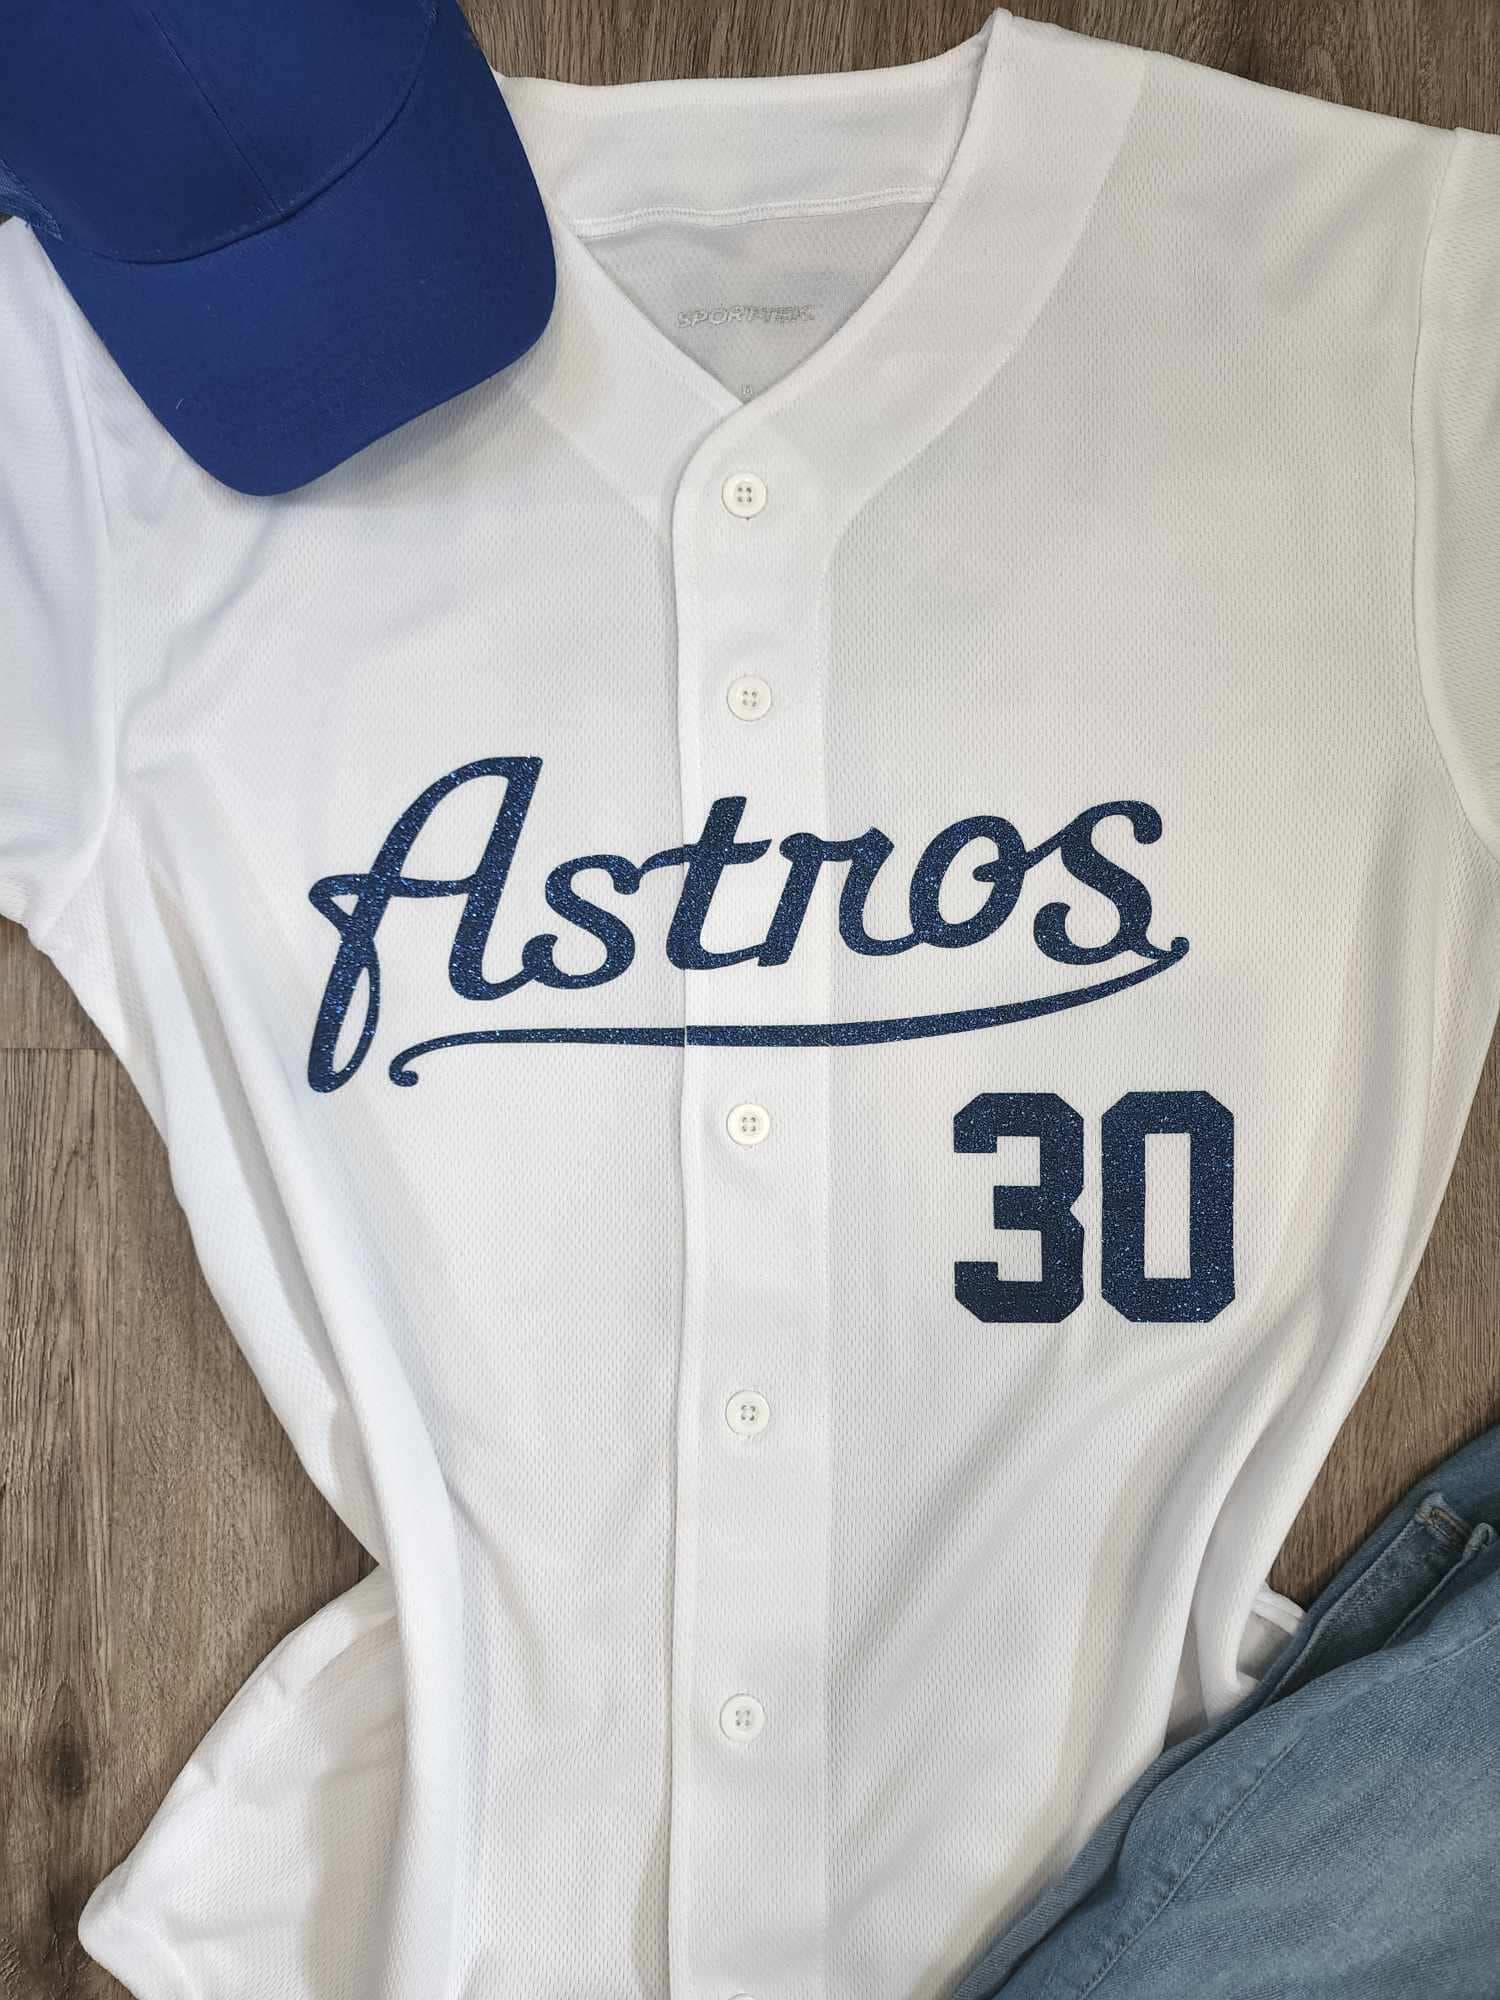 Houston Astros Inspired Baseball Jersey: Baseball Fan Gear